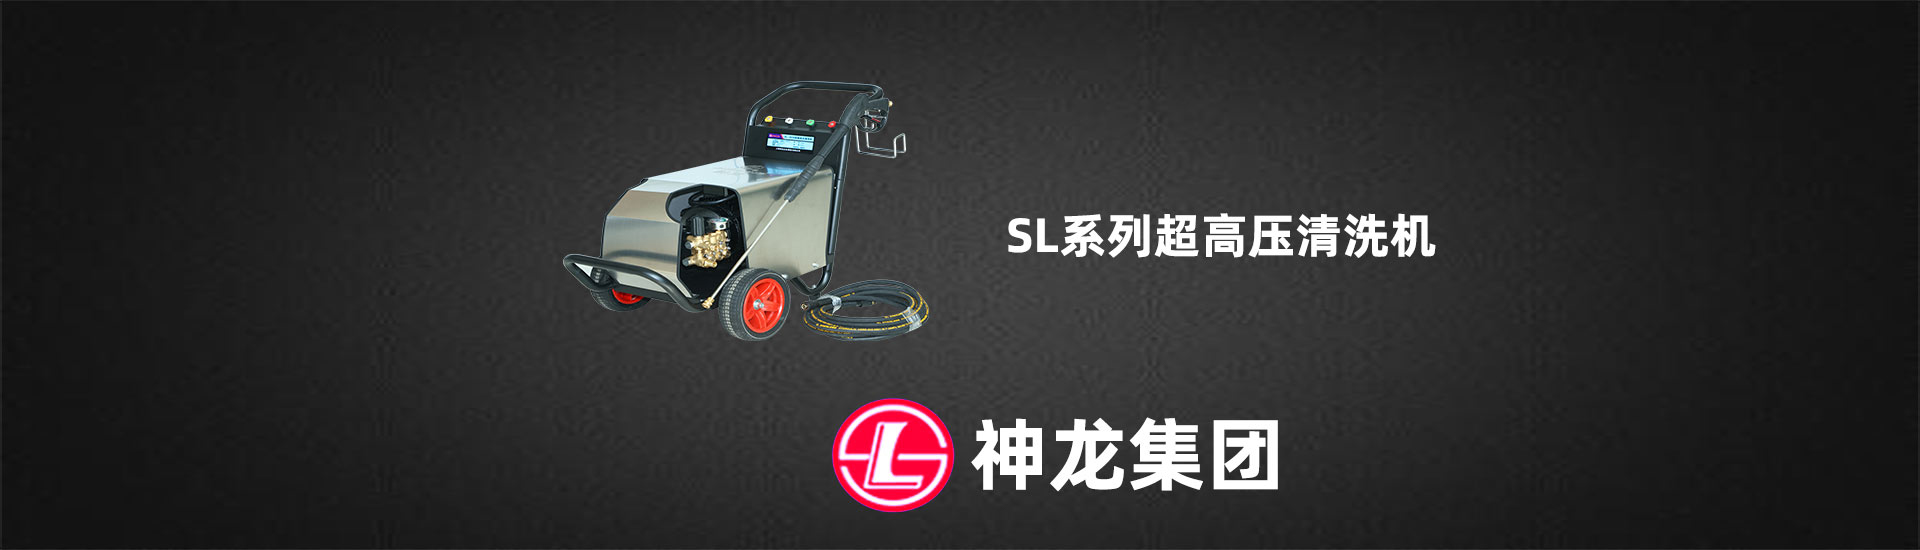 上海神龙企业（集团）有限公司-高压清洗机工厂-第一张幻灯大图